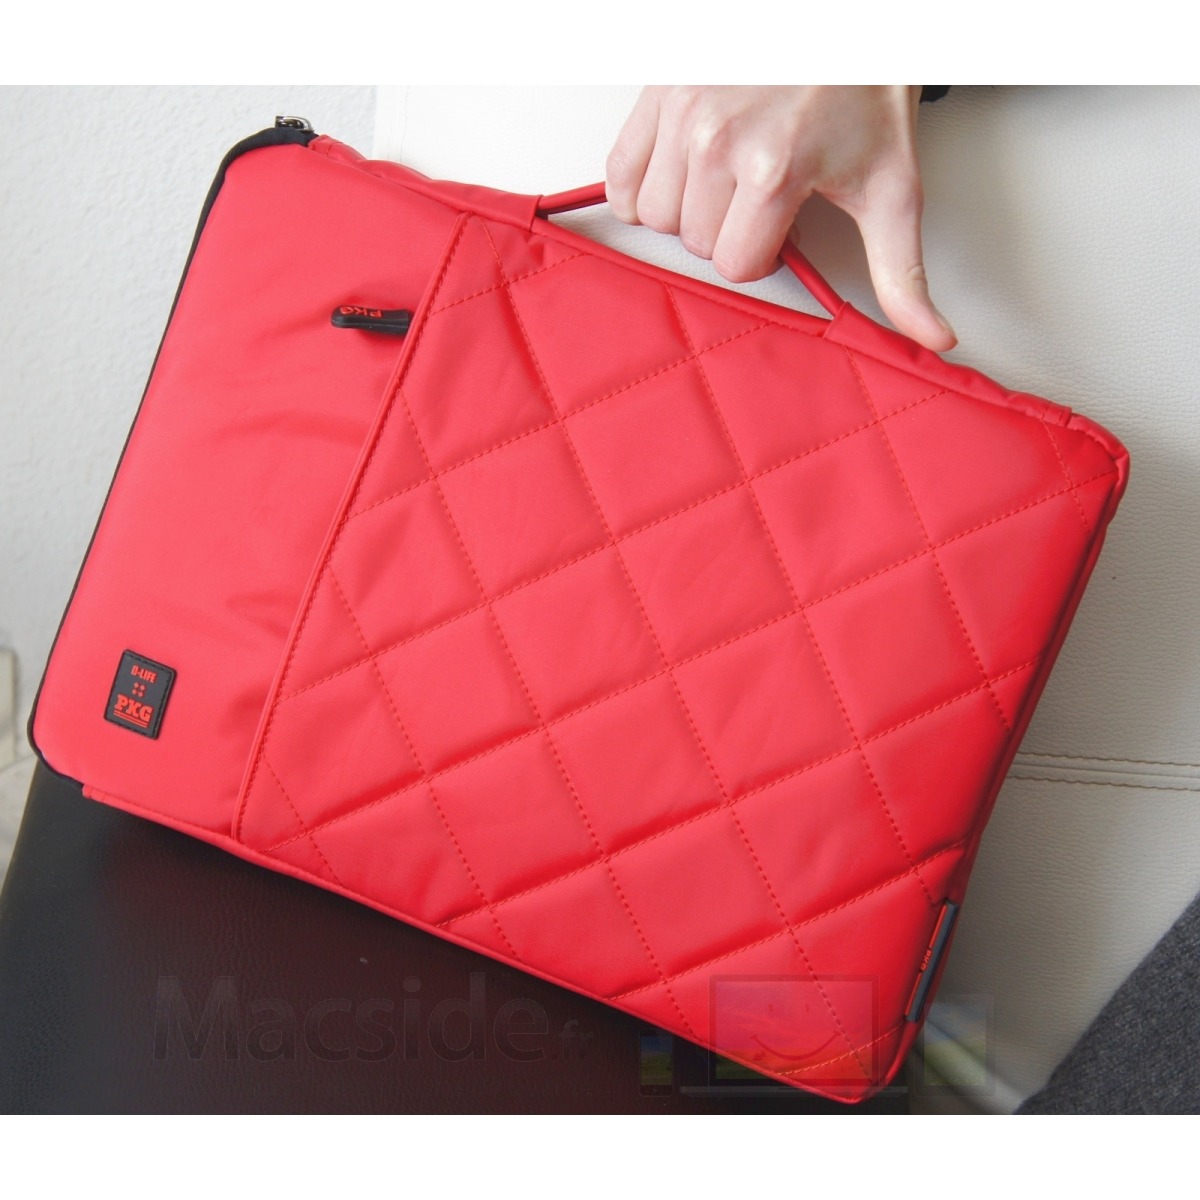 Sacoche PKG matelassée de couleur rouge pour MacBook Air ou Pro 13 pocues 